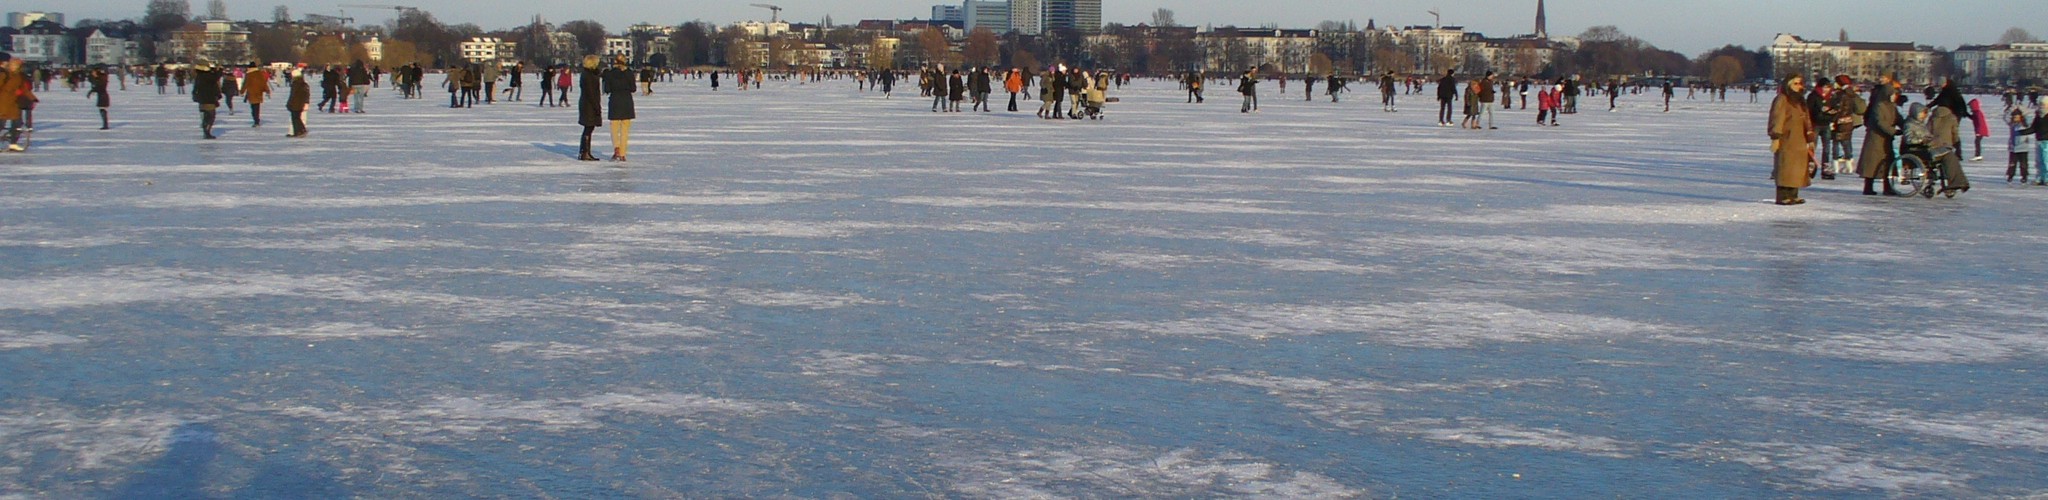 Die zugefrorene Alster im Februar 2012 - Die Eisdecke darf betreten werden !